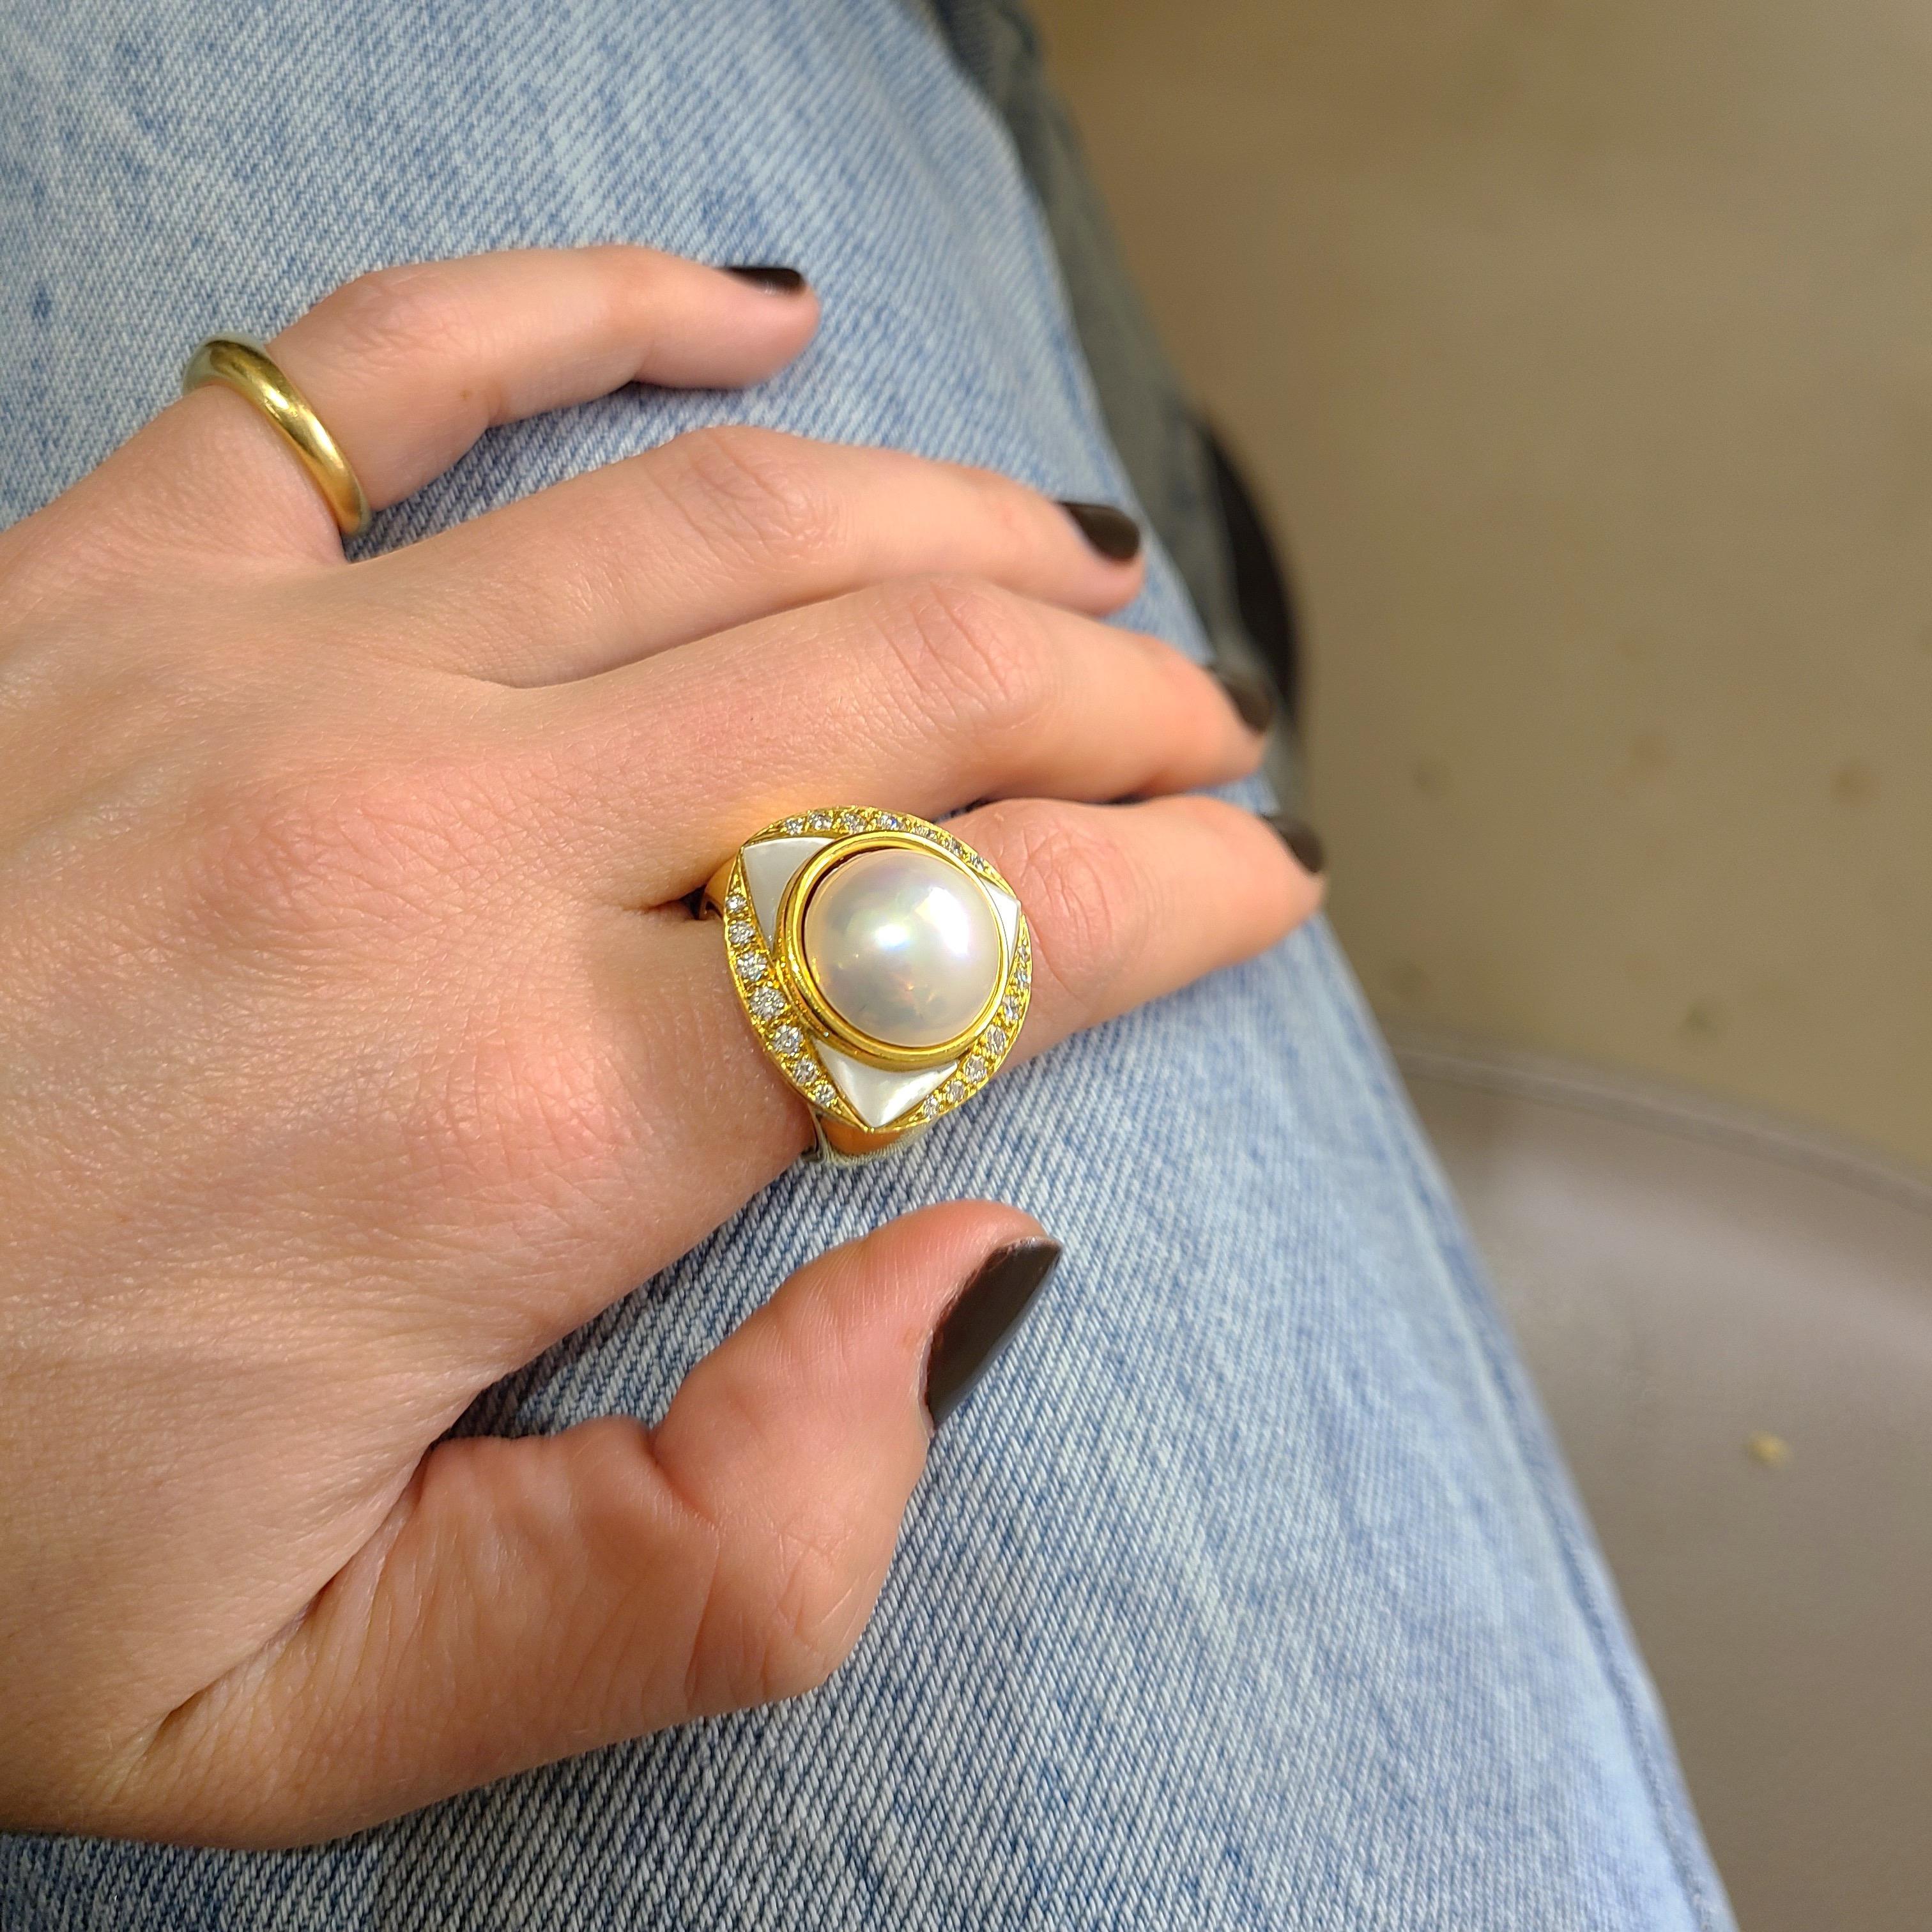 Klassisch und elegant - so lässt sich dieser Ring aus 18 Karat Gelbgold am besten beschreiben. Im Mittelpunkt des Rings steht eine Mabe-Perle in einer Lünettenfassung. Drei Dreiecke aus Perlmutt und 0,53 Karat runde Brillanten umgeben die zentrale